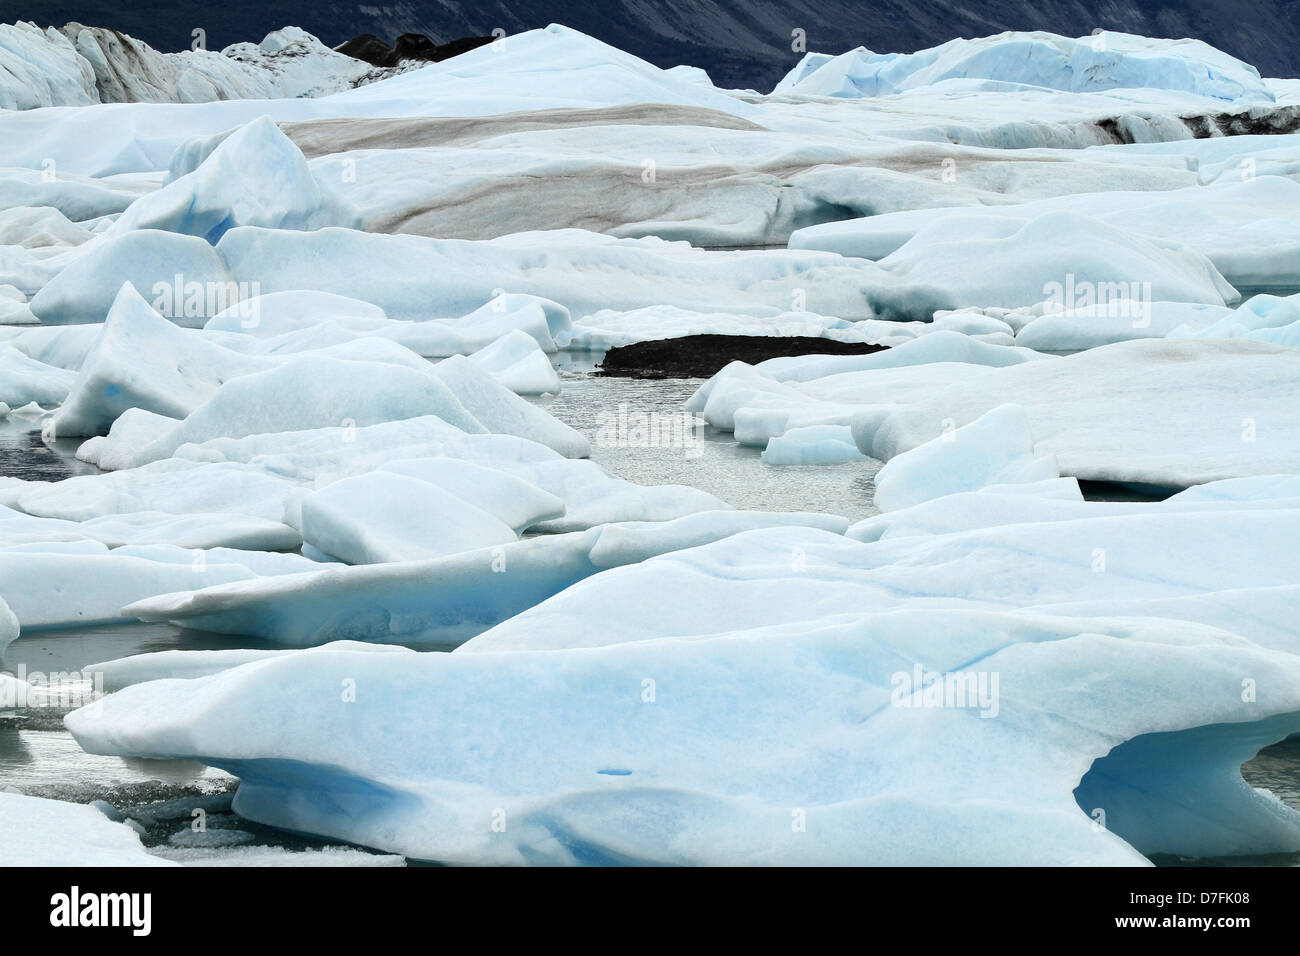 Körper Wasser See Wasser blau weiße lebendige Farbe gesättigt hell leuchtenden Farben Eis kalt gefrorene wilde Wildnis extremen Gelände Stockfoto